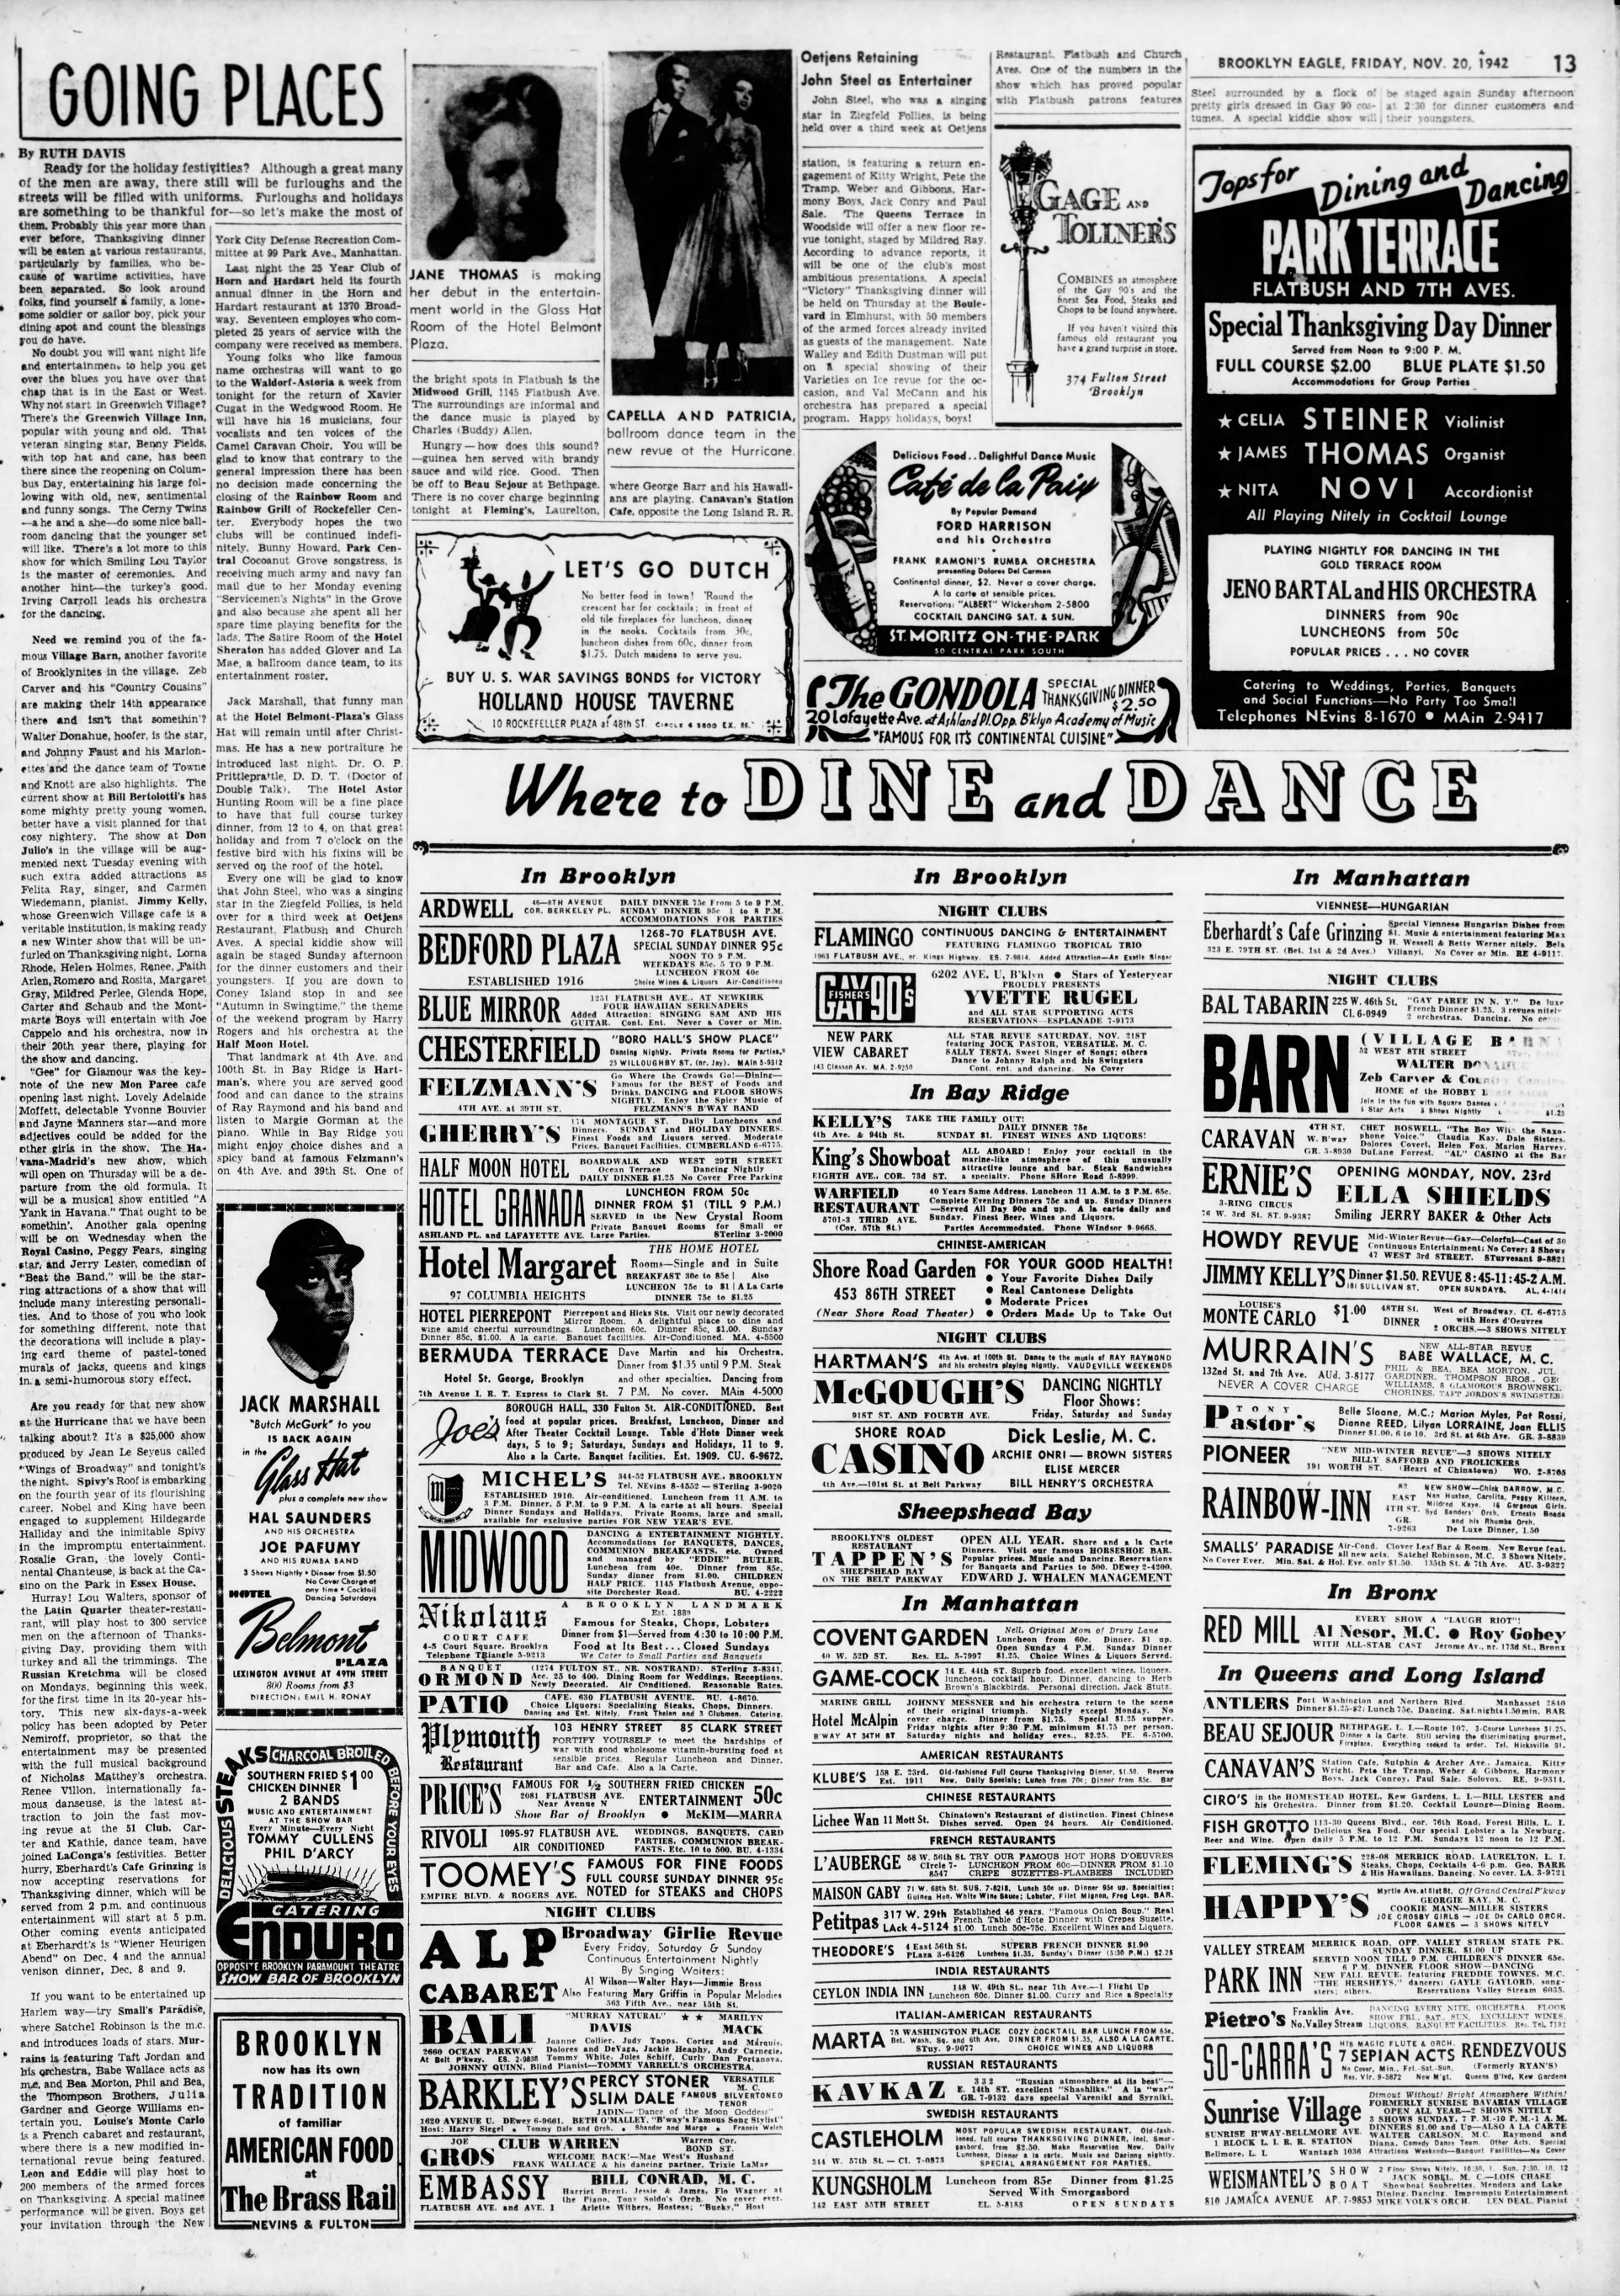 The_Brooklyn_Daily_Eagle_Fri__Nov_20__1942_(3).jpg